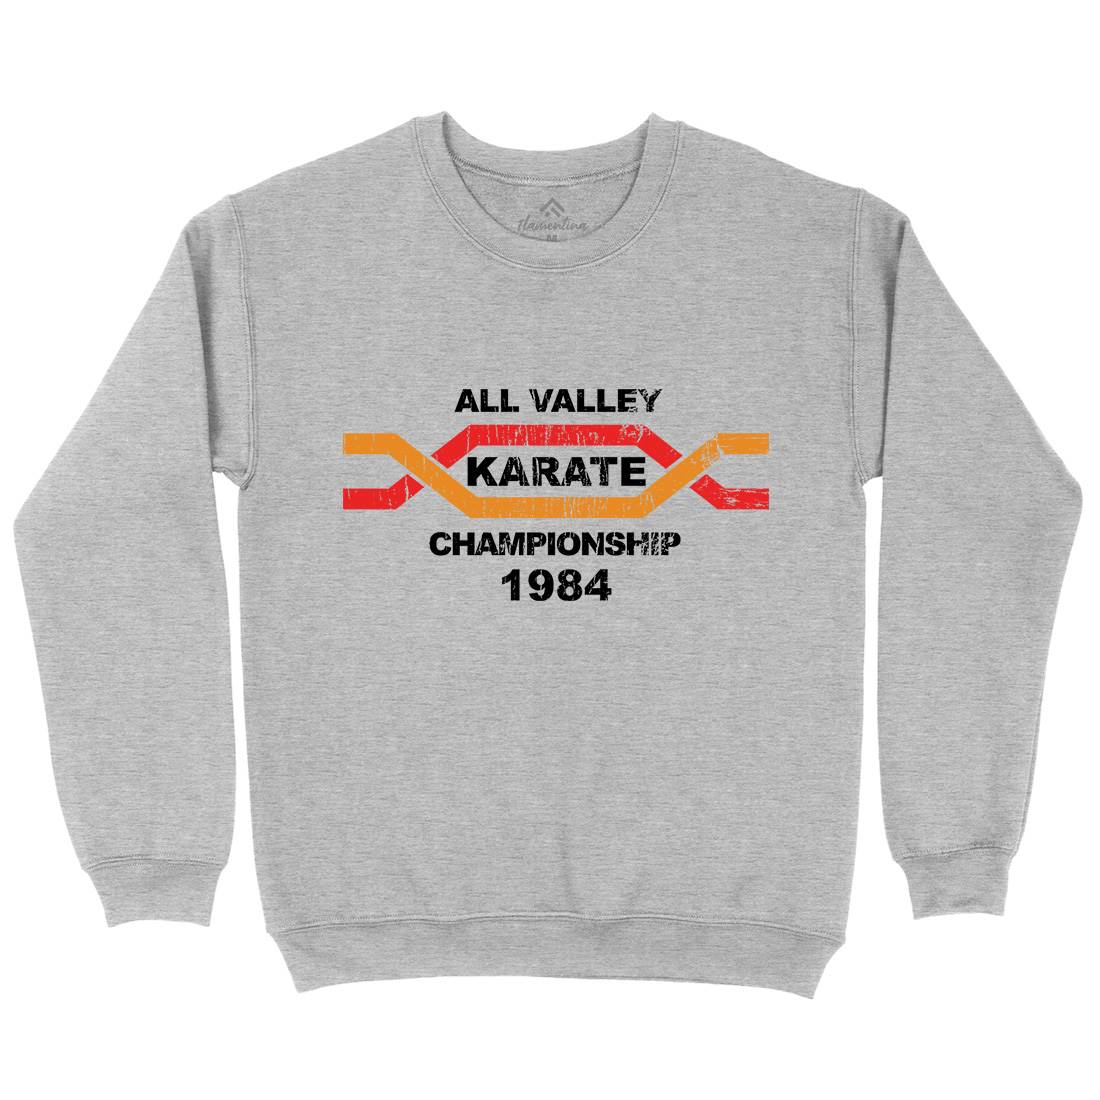 All Valley Kids Crew Neck Sweatshirt Sport D251